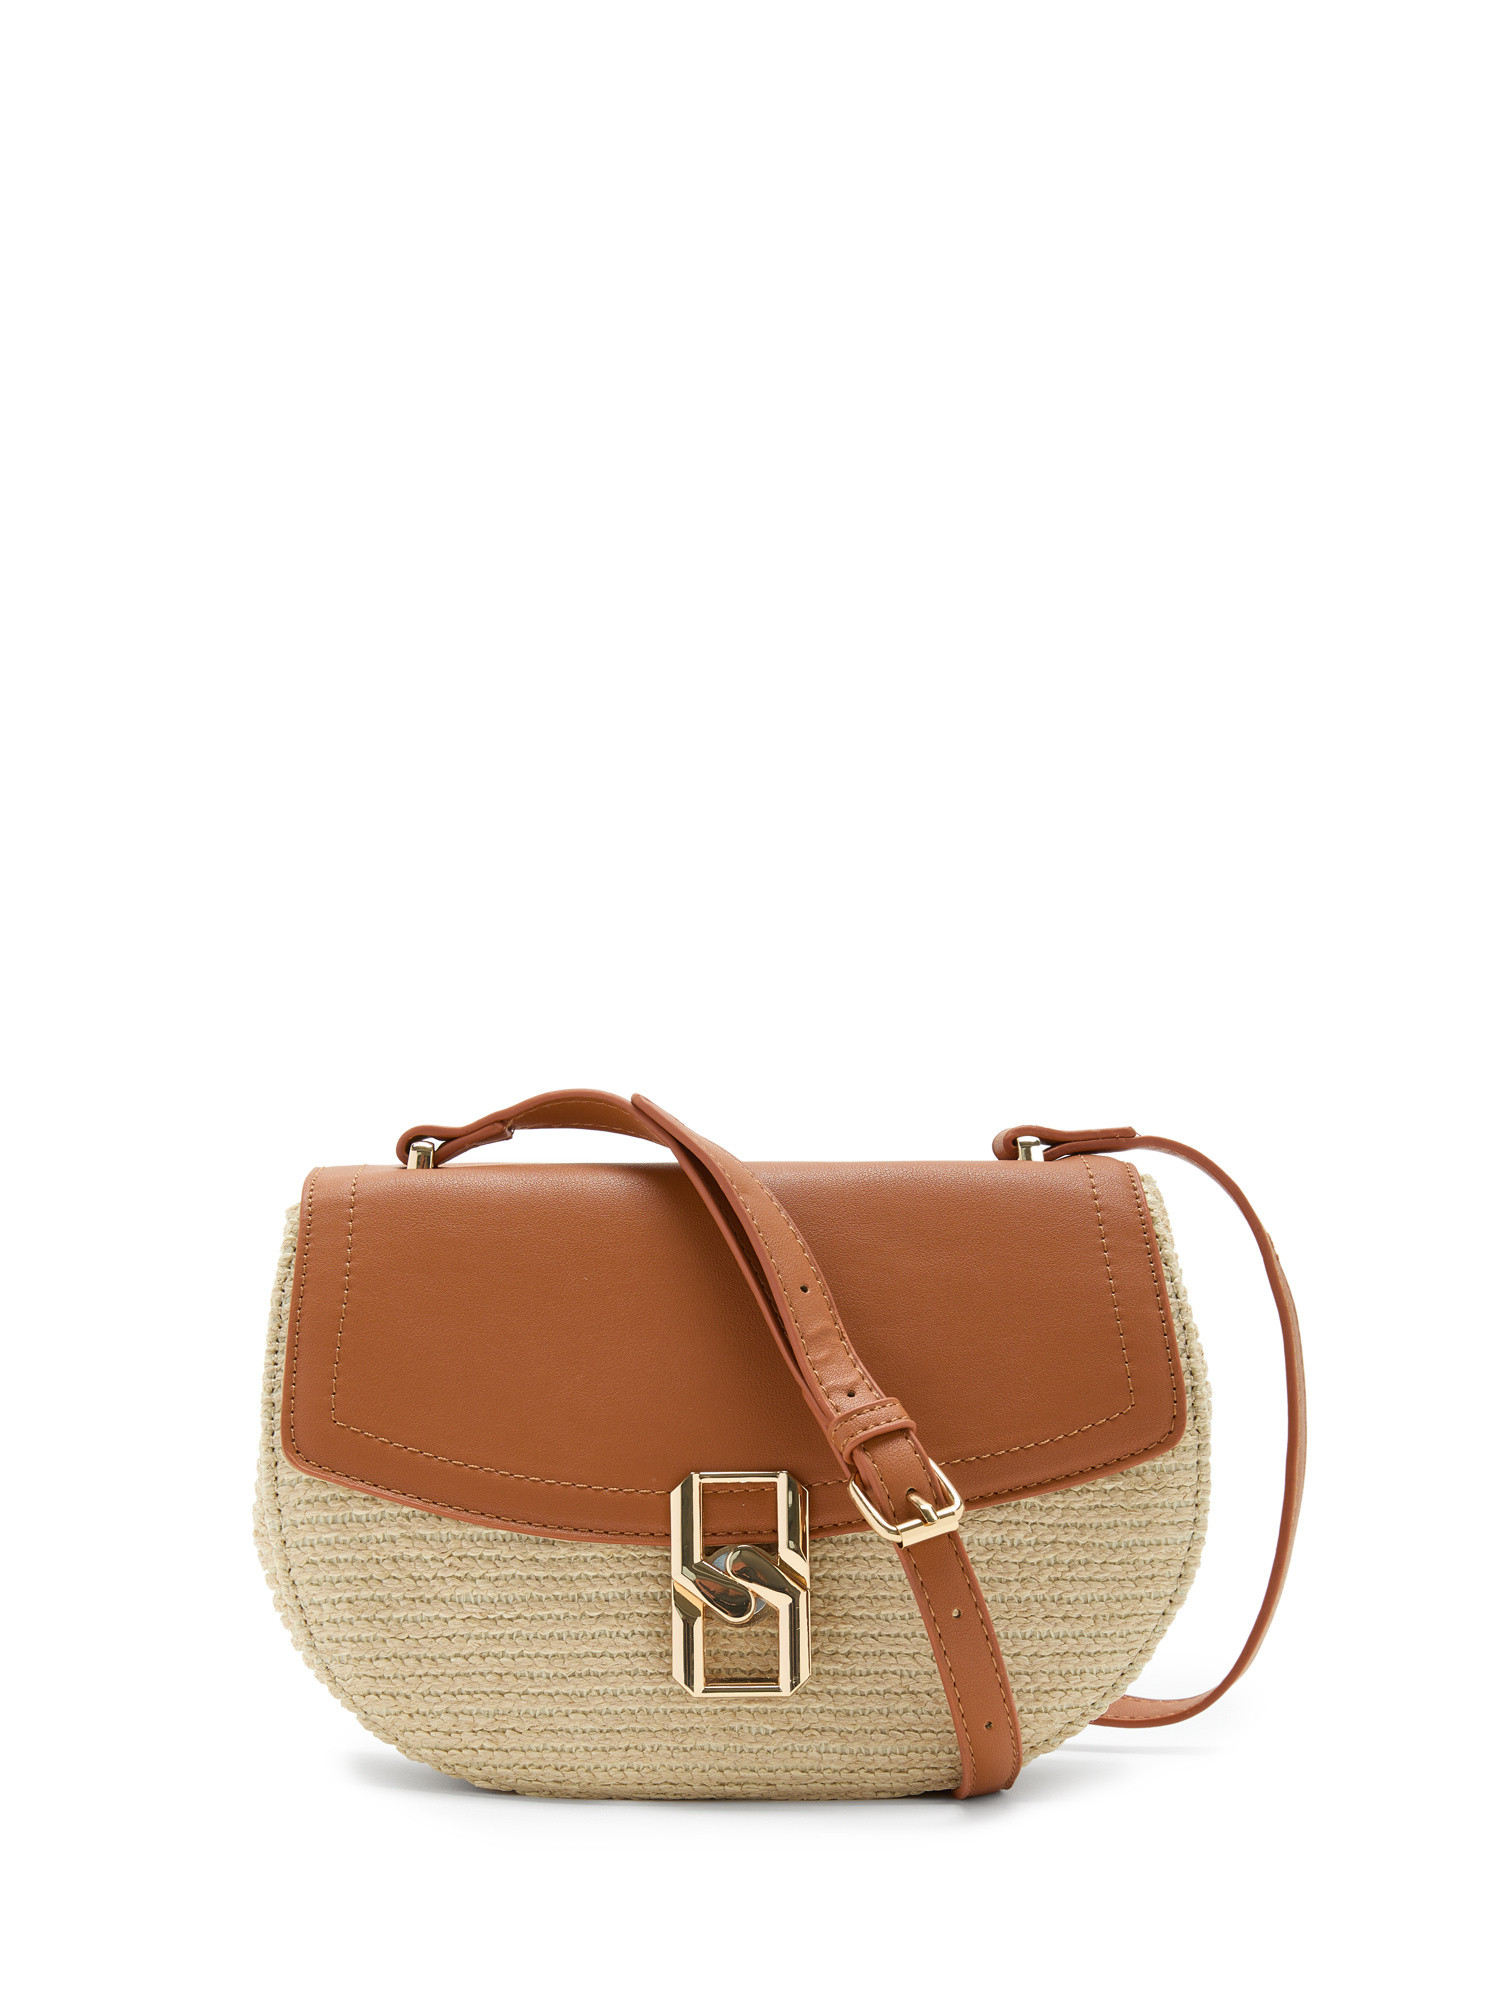 Koan - Straw shoulder bag, Light Brown, large image number 0